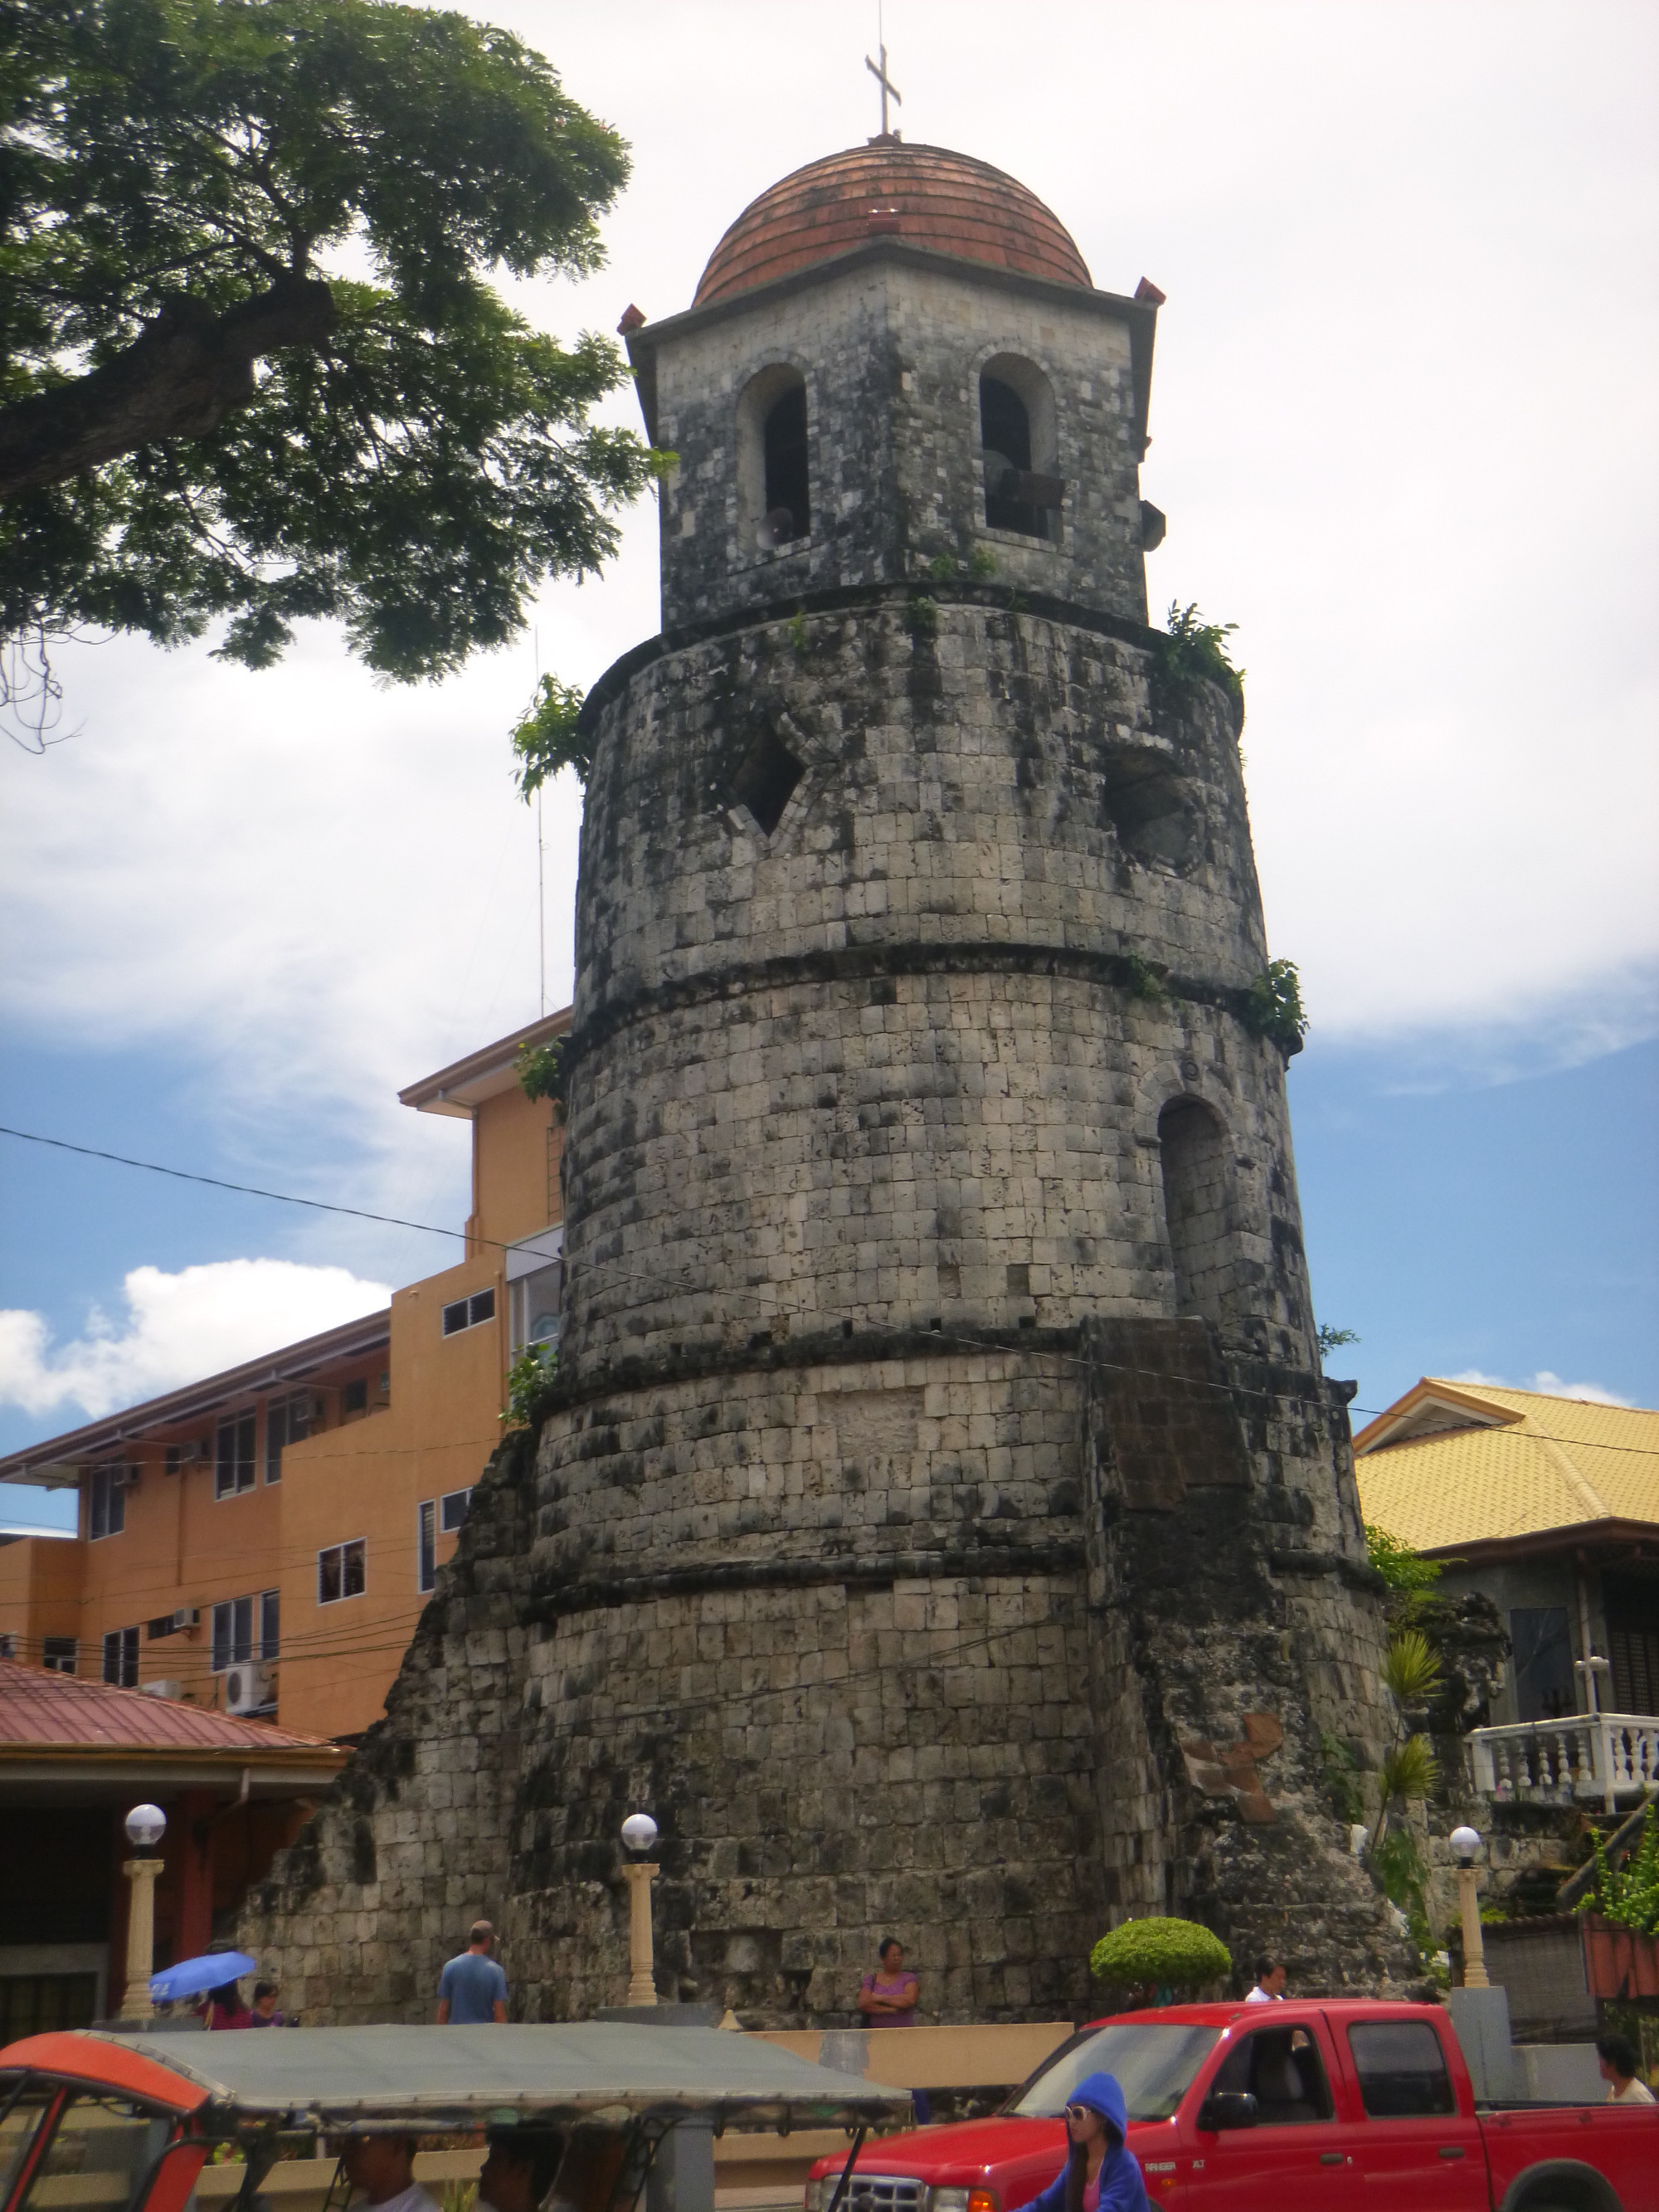 The Dumaguete Campanario (Watchtower)